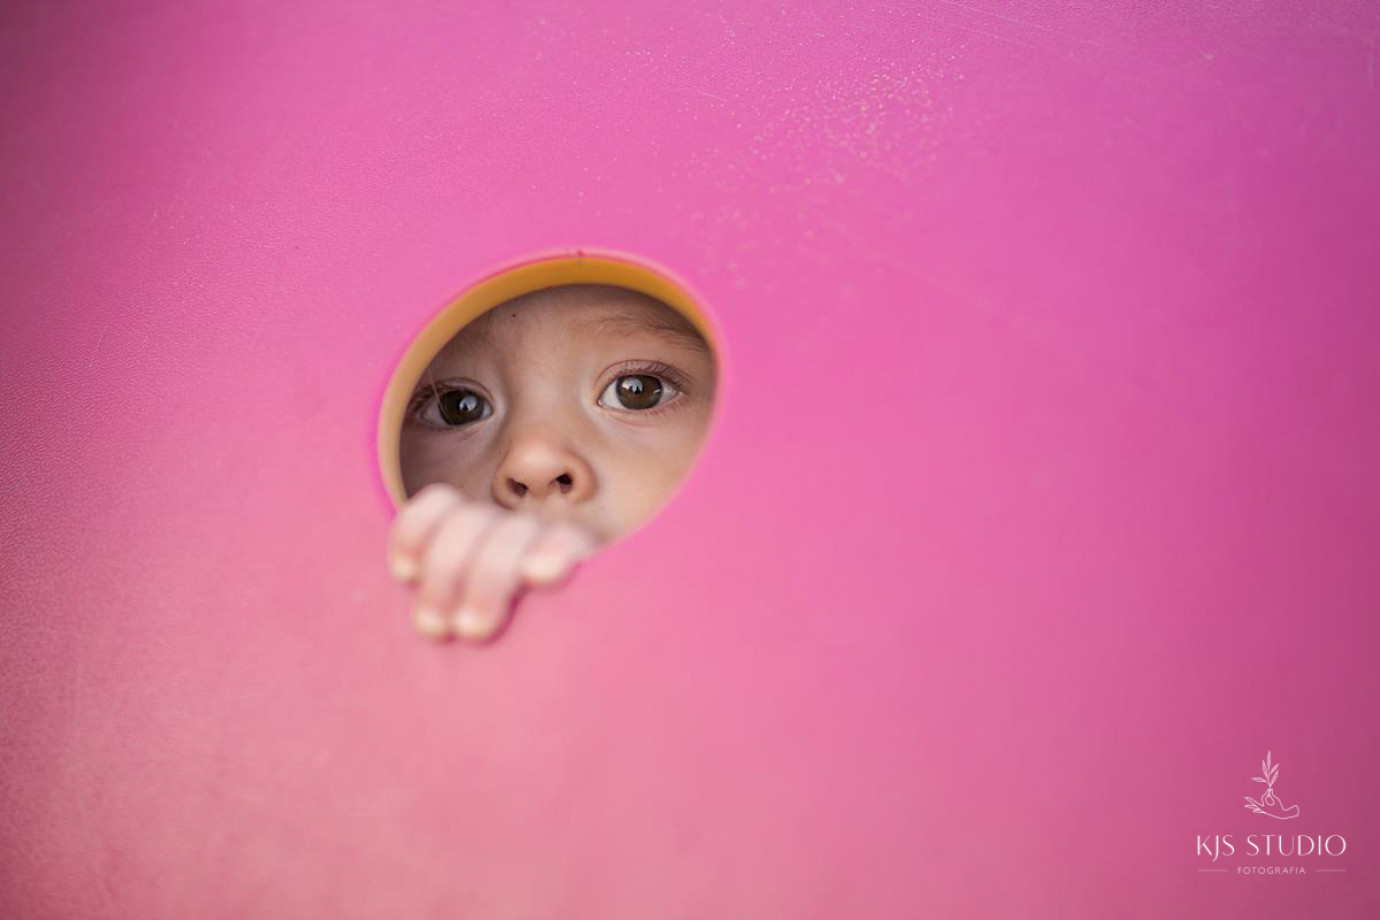 fotograf gdansk kjs-fotografia portfolio sesje dzieciece fotografia dziecieca sesja urodzinowa